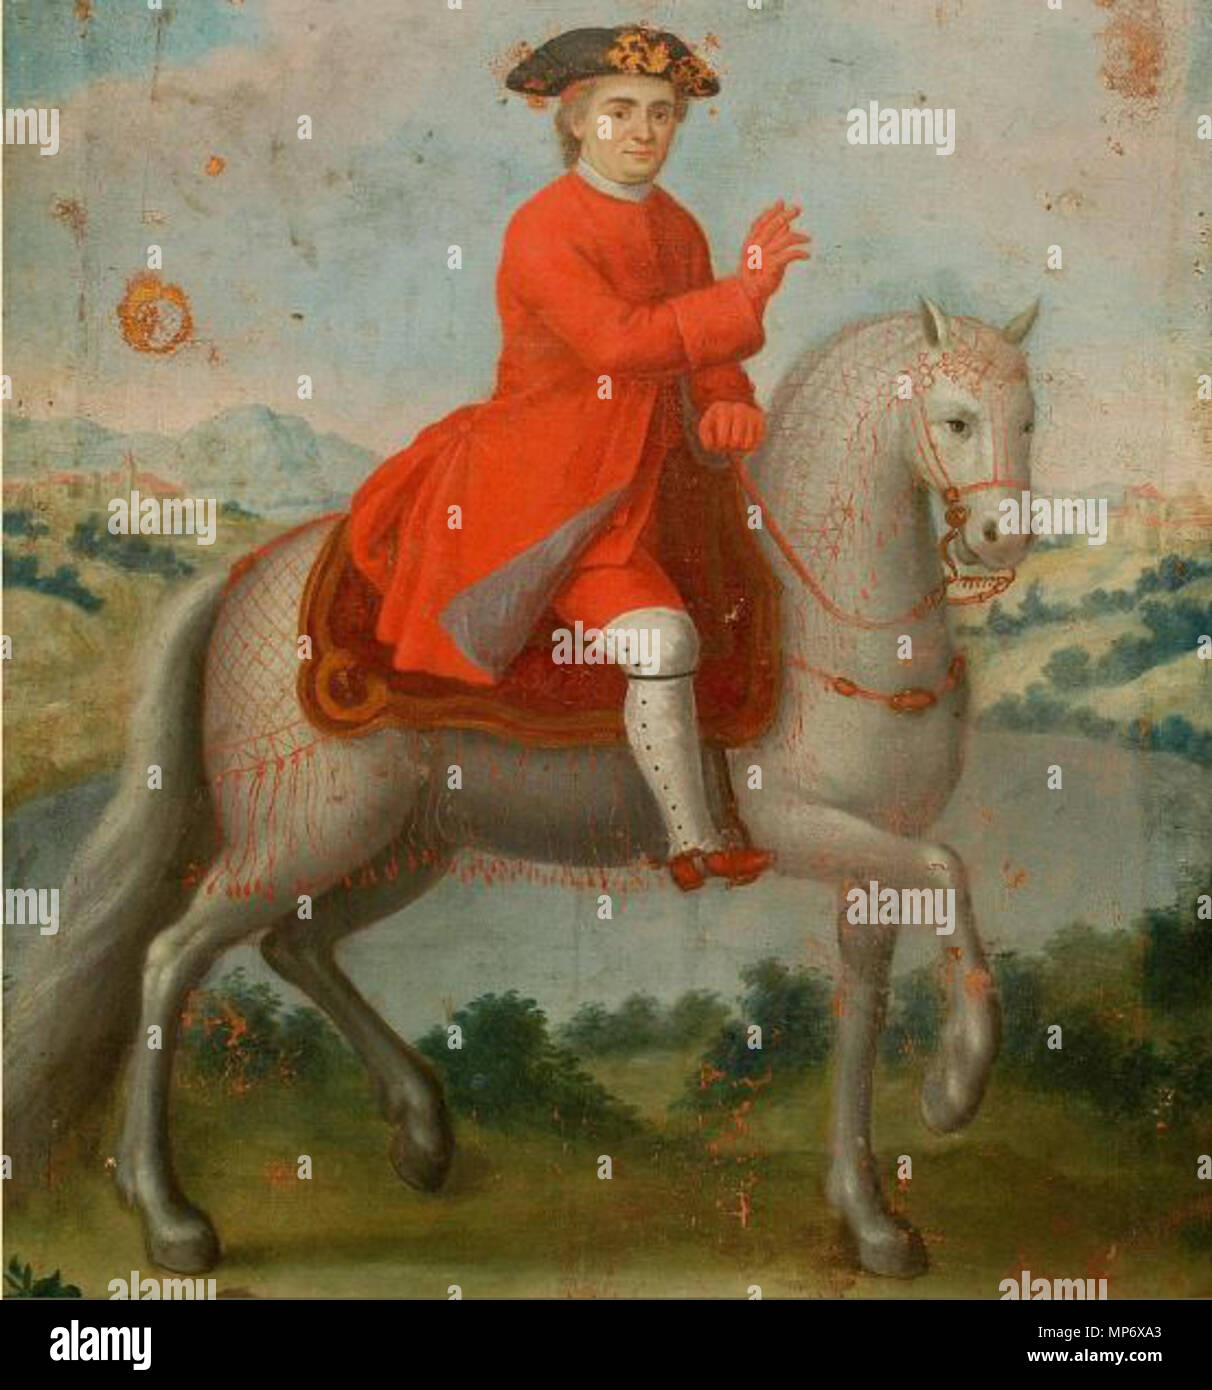 . Englisch: Papst Clemens XIV. auf dem Pferd. 11 September 2017, 14:58:14. Unbekannter spanischer Maler 1013 Papst Clemens XIV. ein Pferd reiten Stockfoto